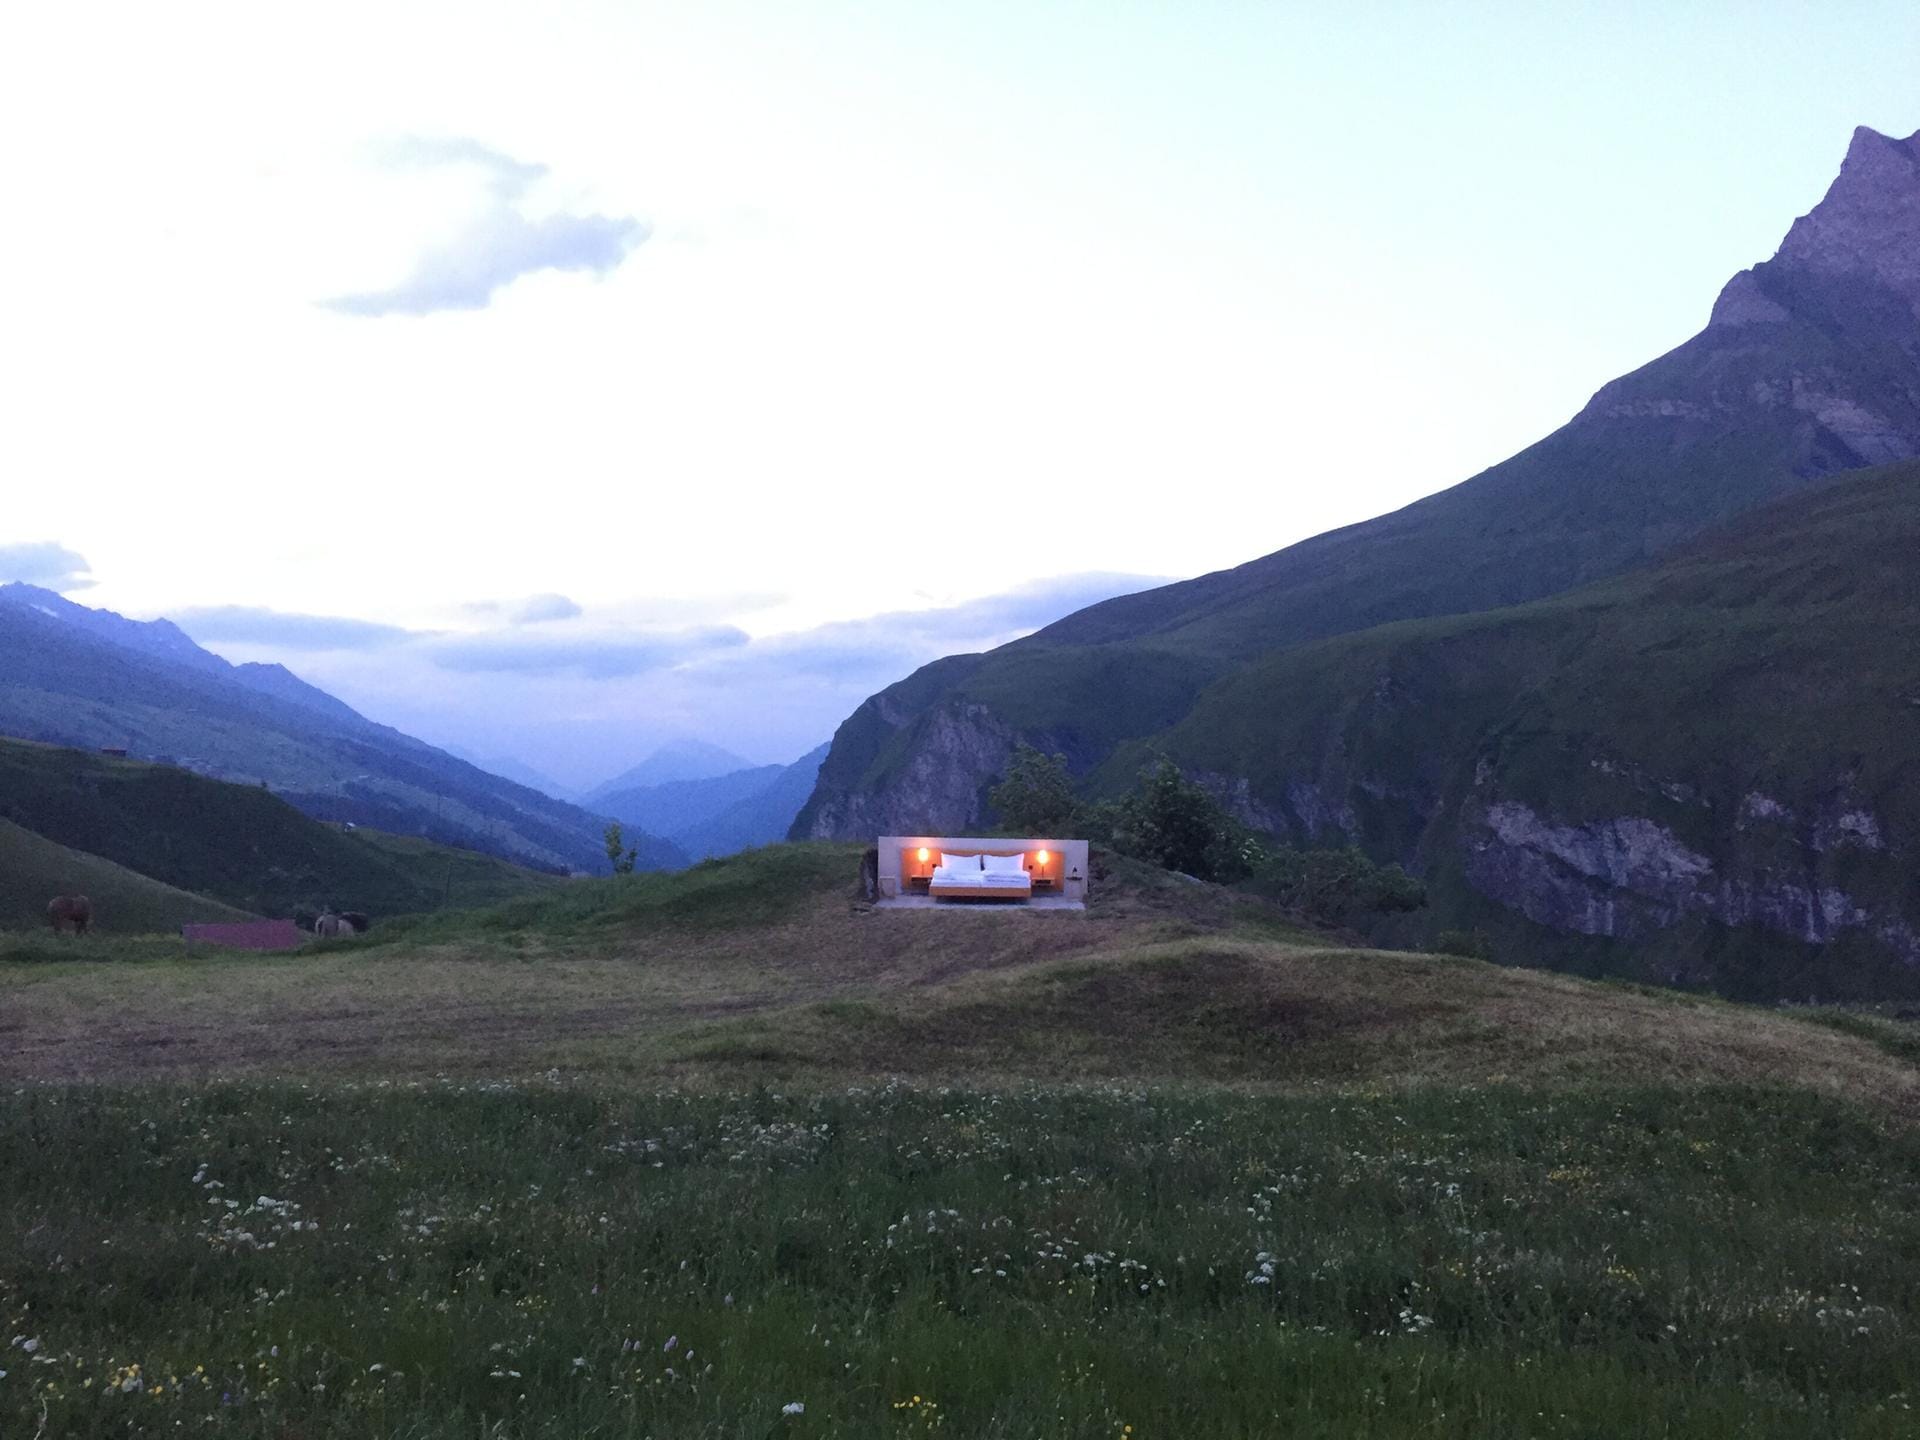 Eine Übernachtung im Open-Air-Bett kostete 2016 250 Schweizer Franken (circa 230 Euro). Nicht gerade preisgünstig, dafür hat man freie Sicht auf die Bergwelt - und mit etwas Glück auf einen sternenklaren Himmel.